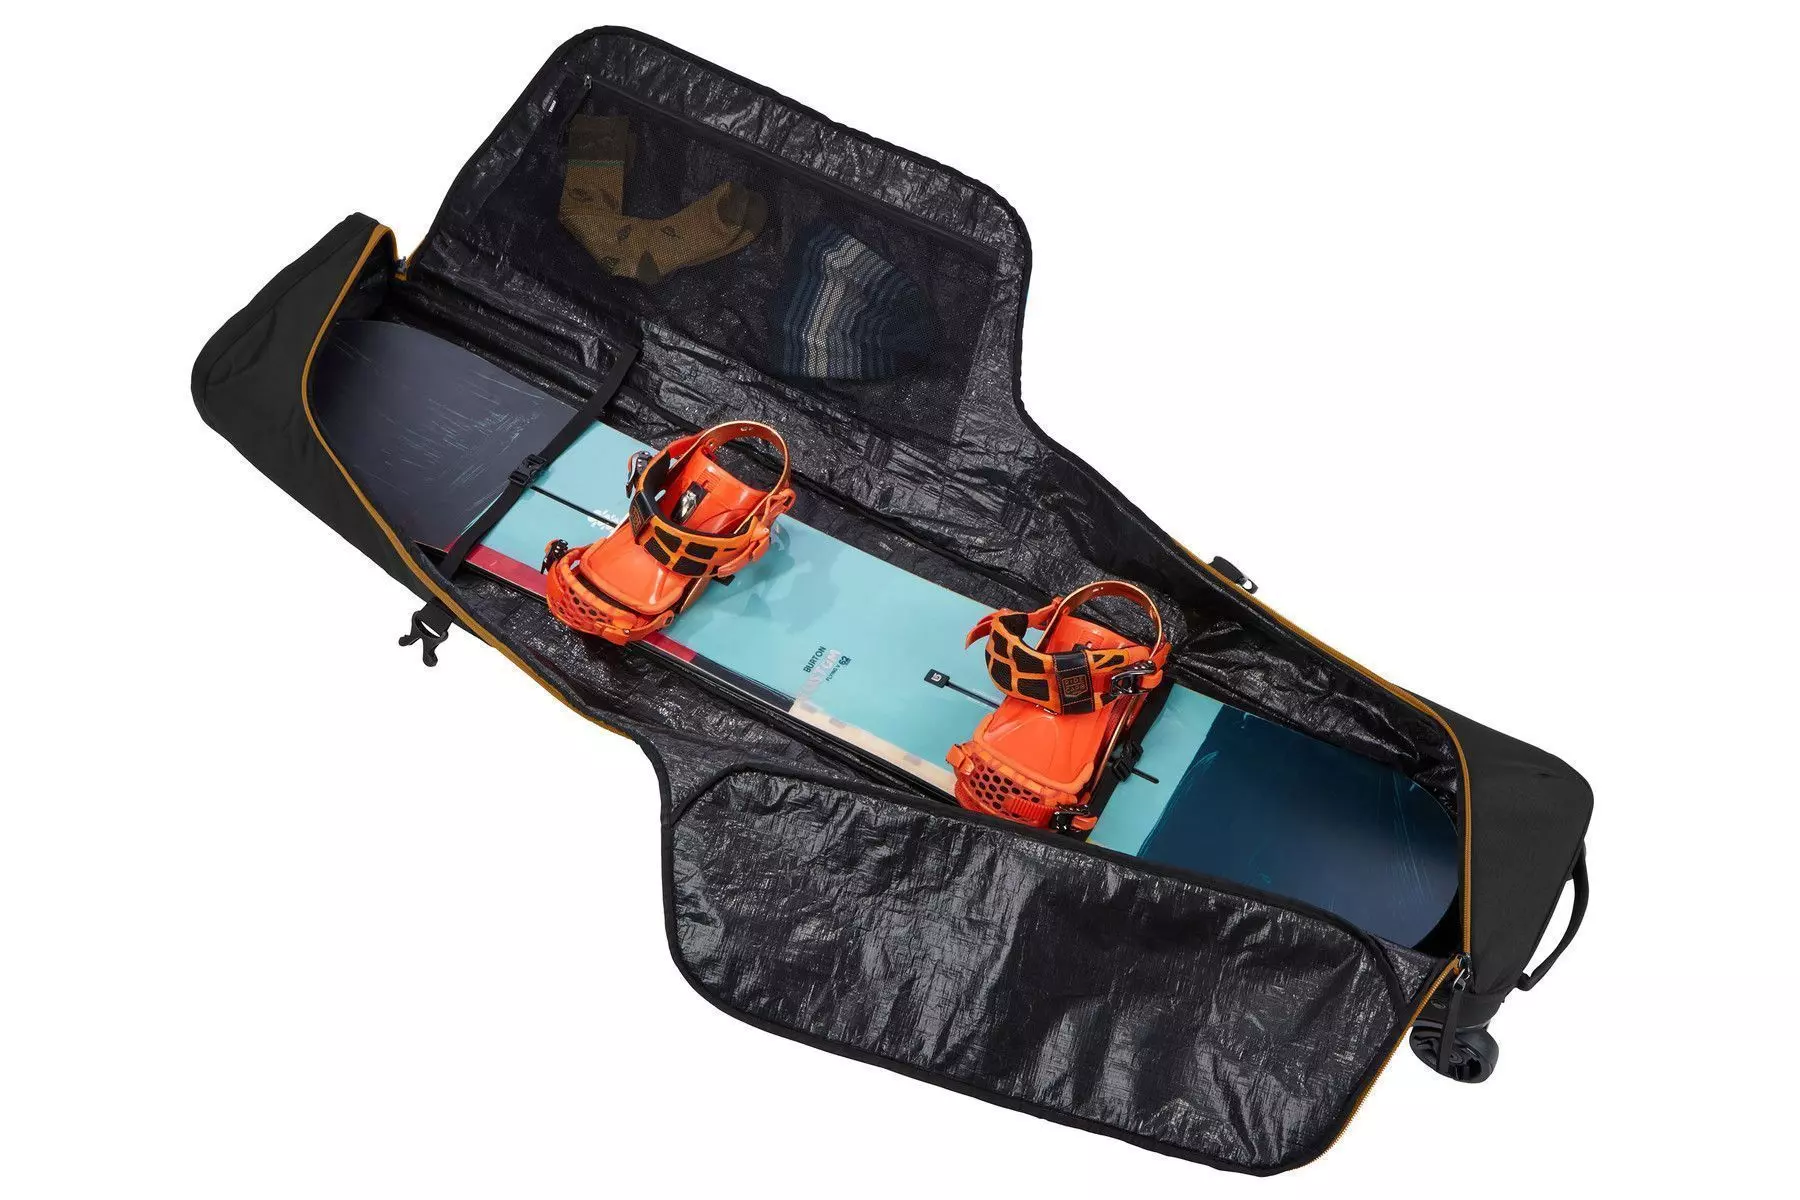 Geantă cu roți Roundtrip Snowboard Roller 165cm black